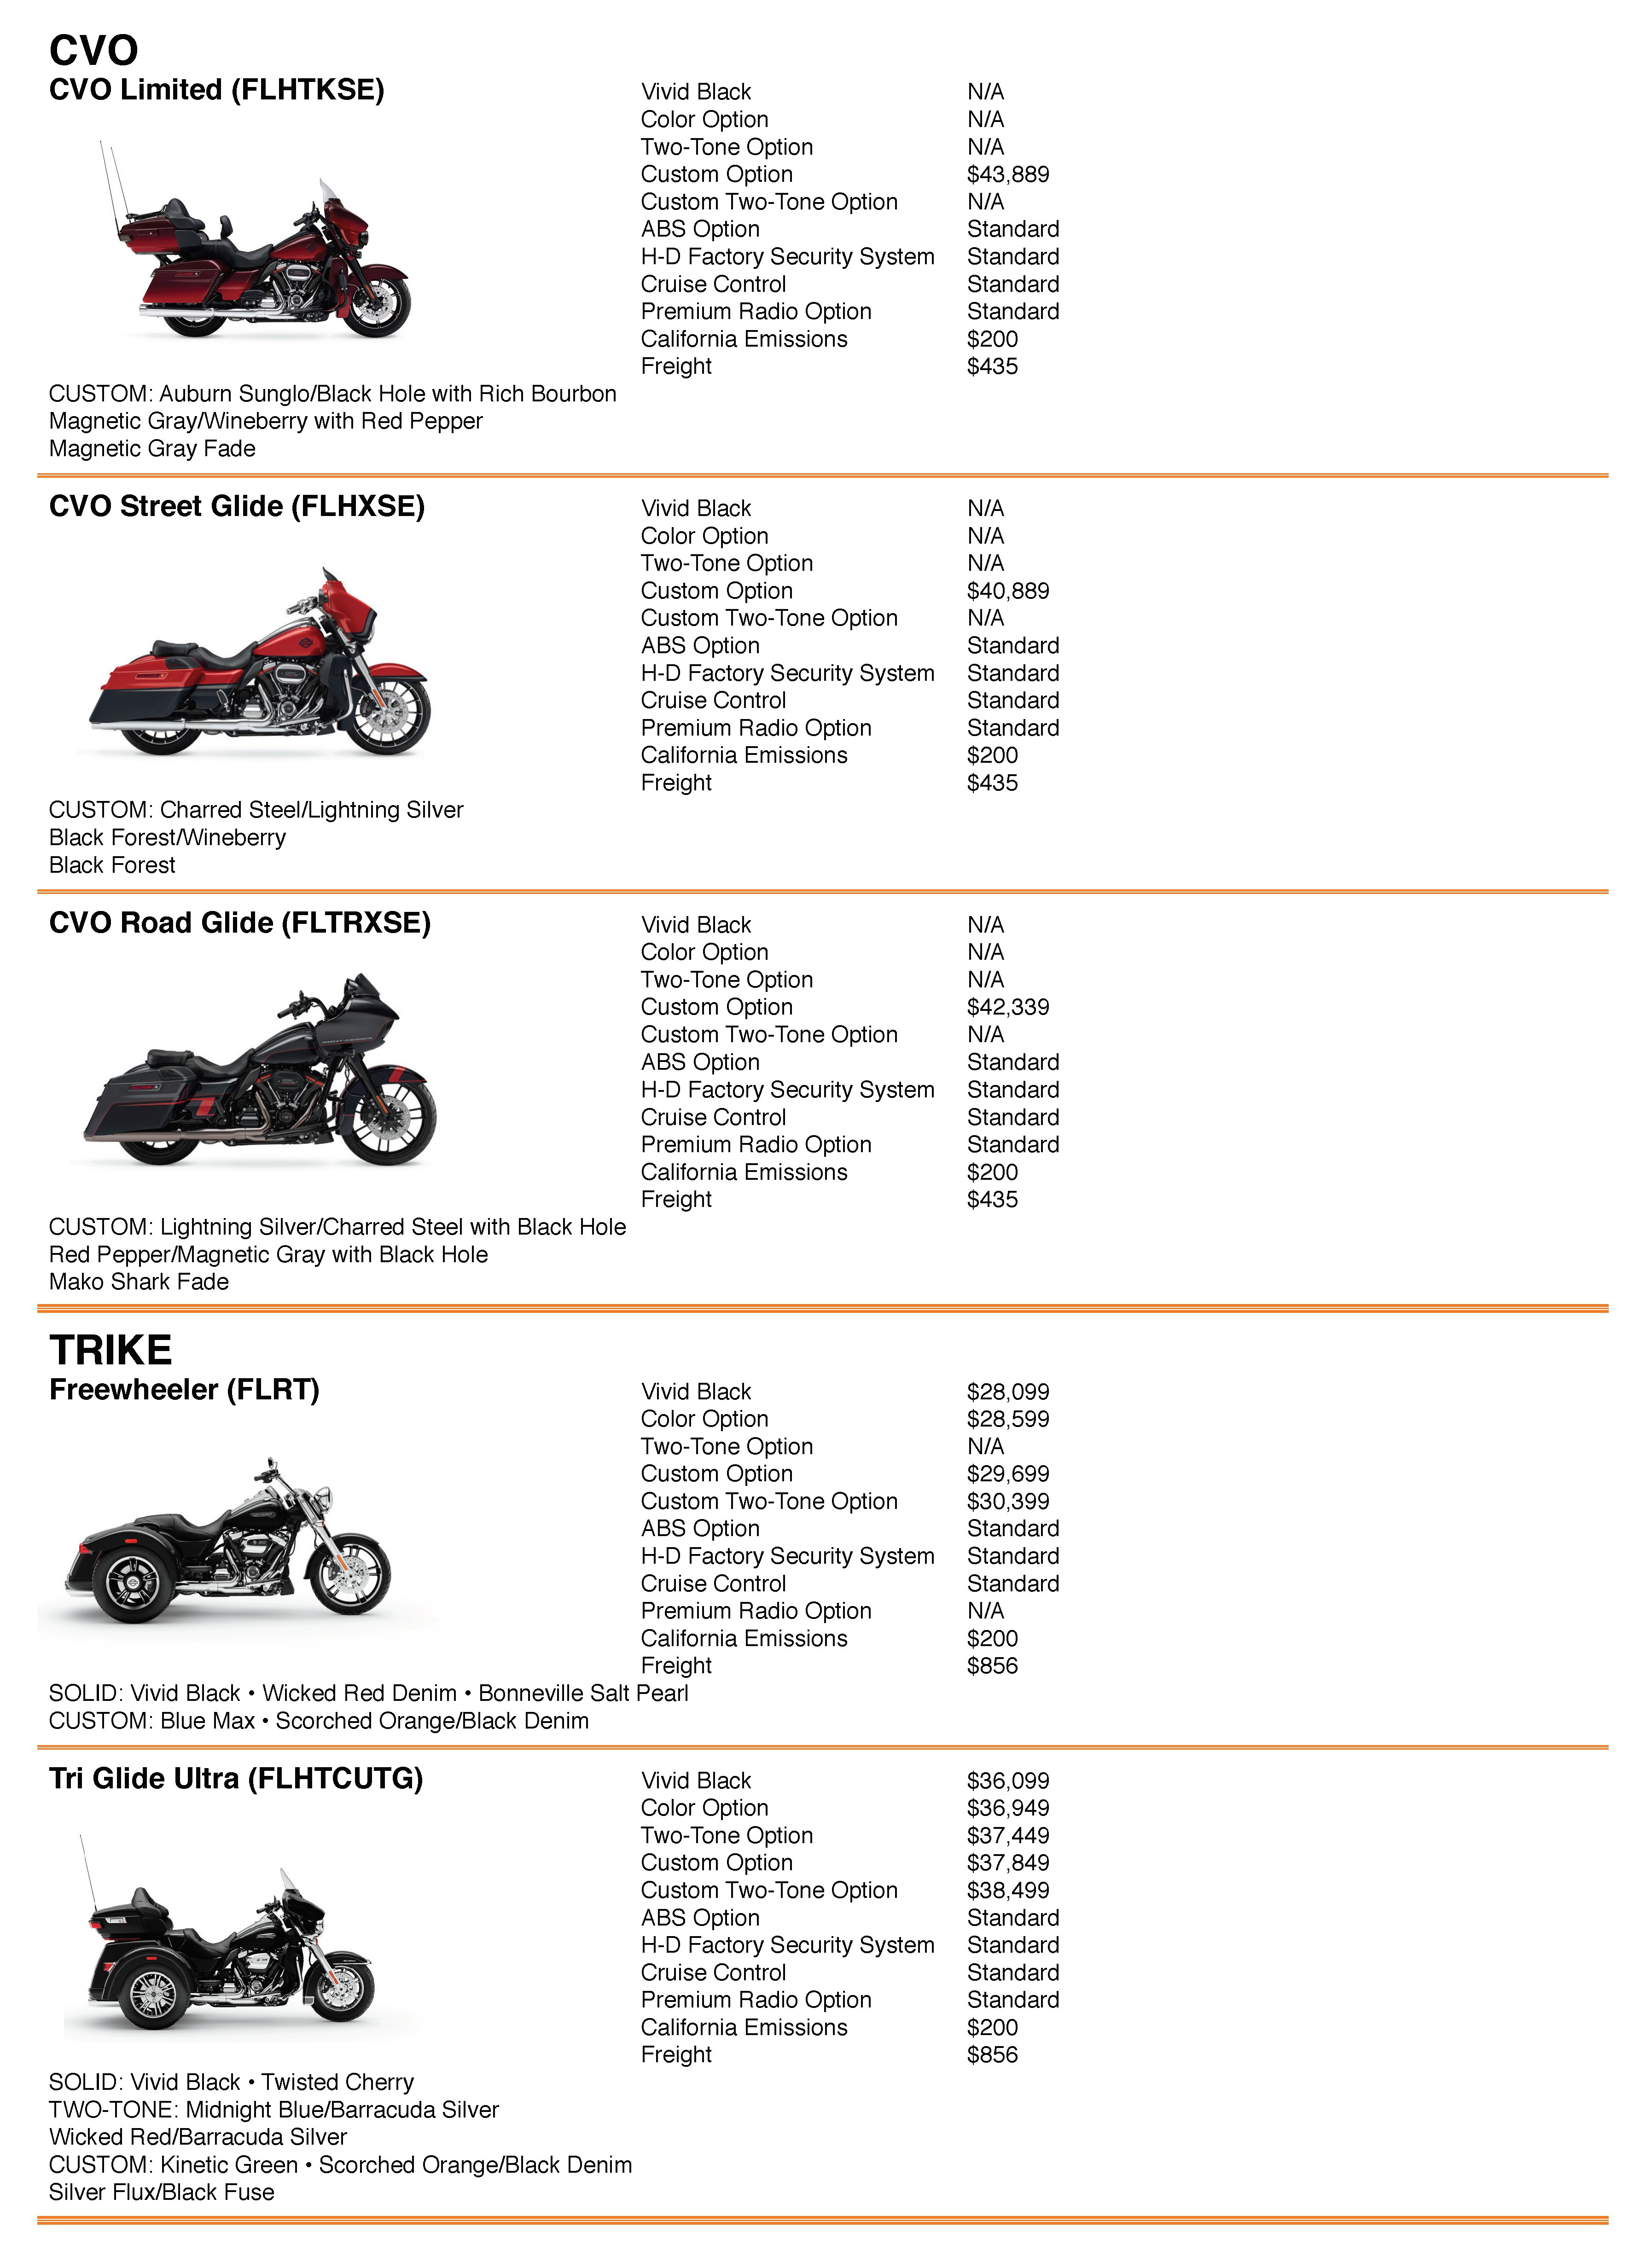 2009 Harley Davidson Color Chart